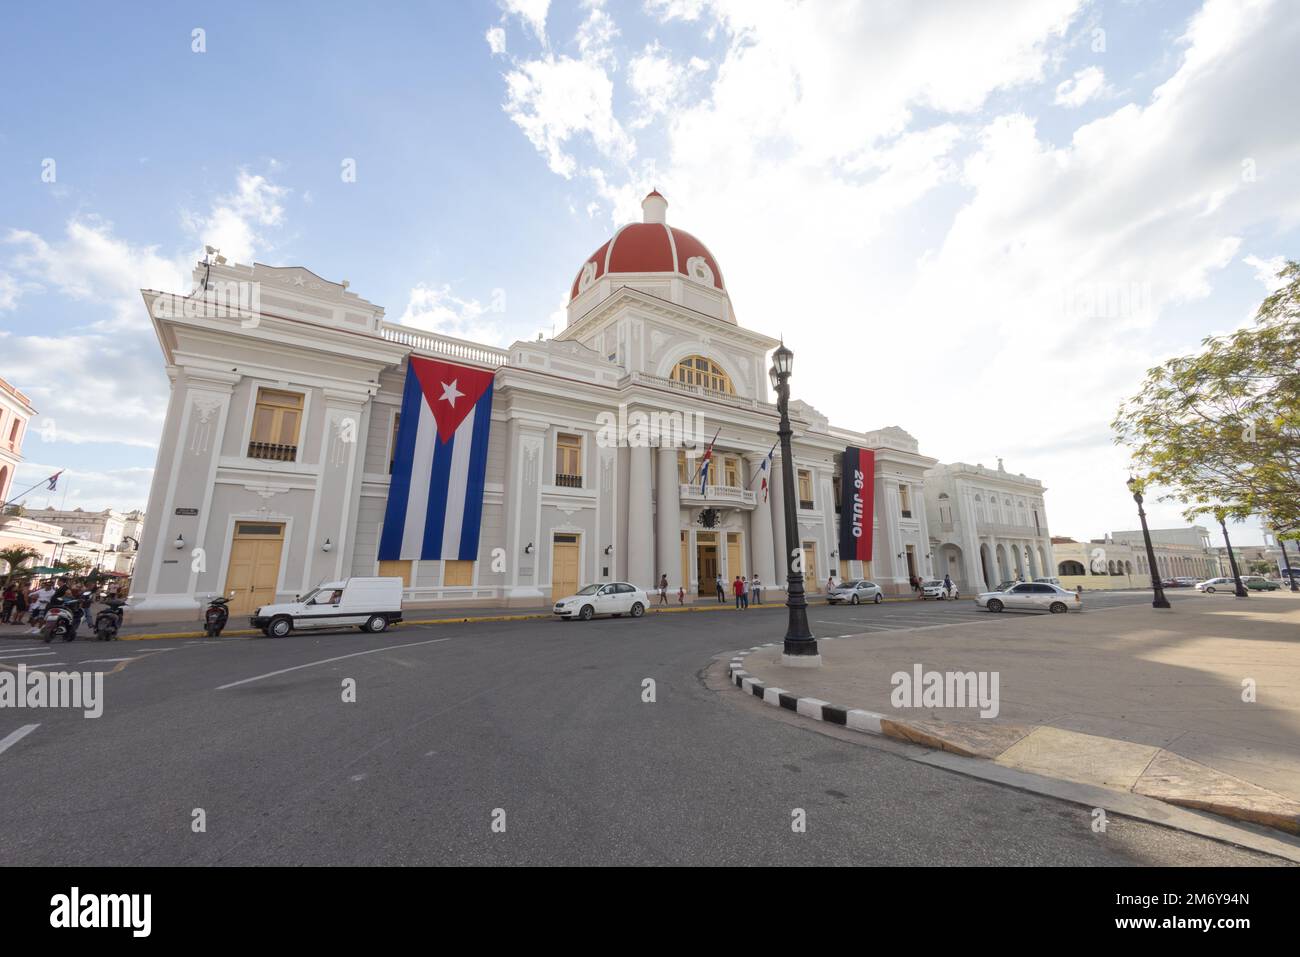 Palacio de Gobierno, Government Palace on Plaza de Armas, Cienfuegos, Cuba Stock Photo